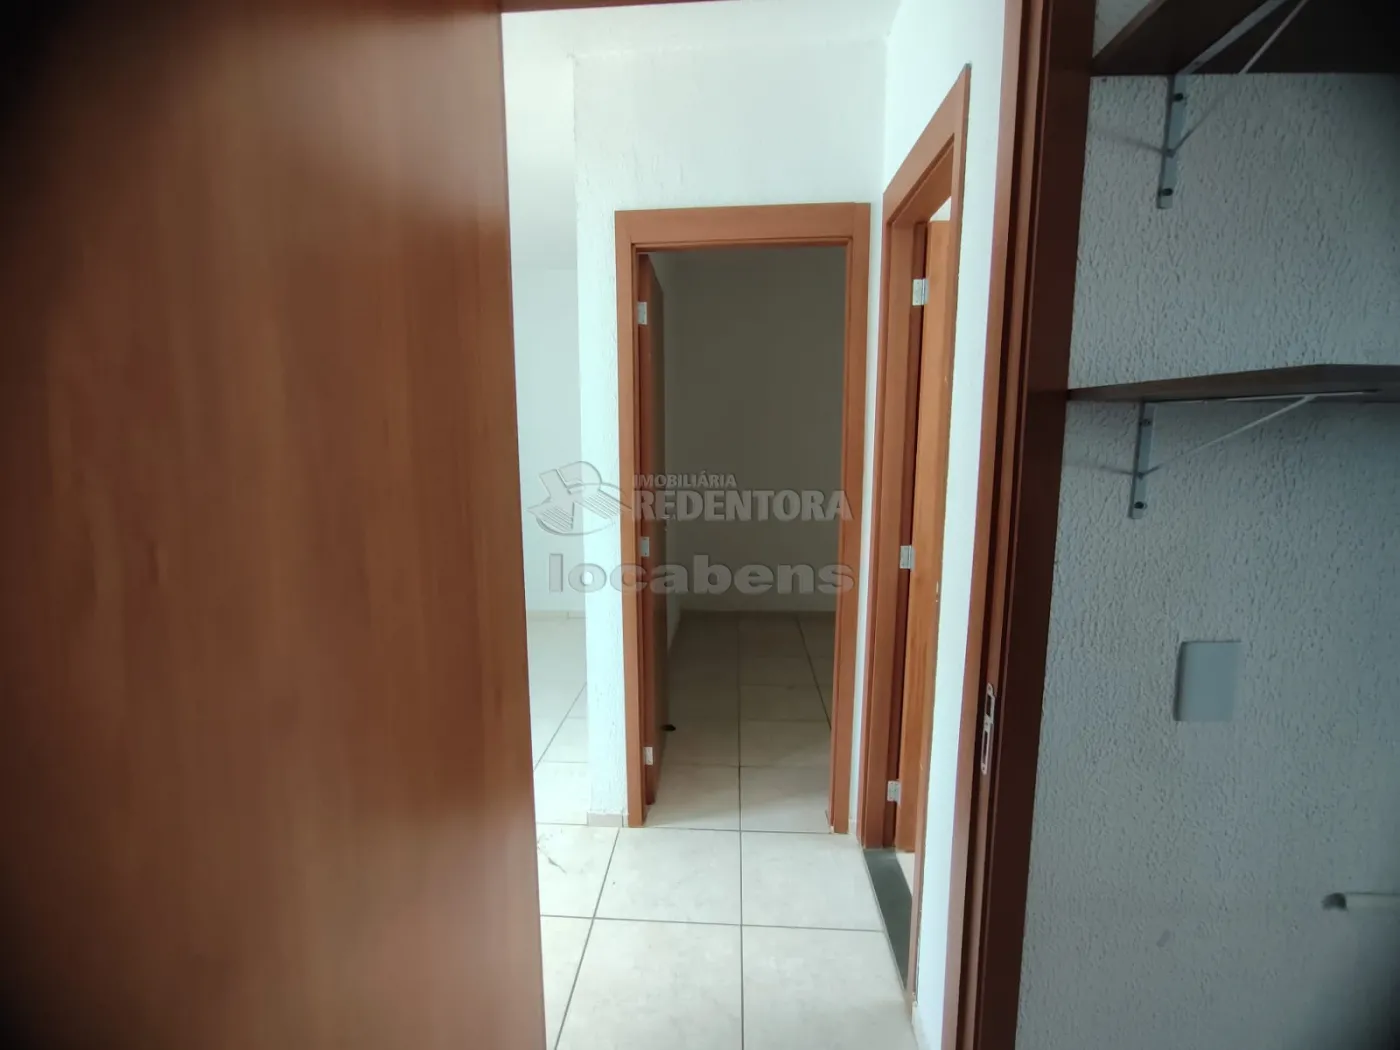 Comprar Apartamento / Padrão em São José do Rio Preto apenas R$ 175.000,00 - Foto 8